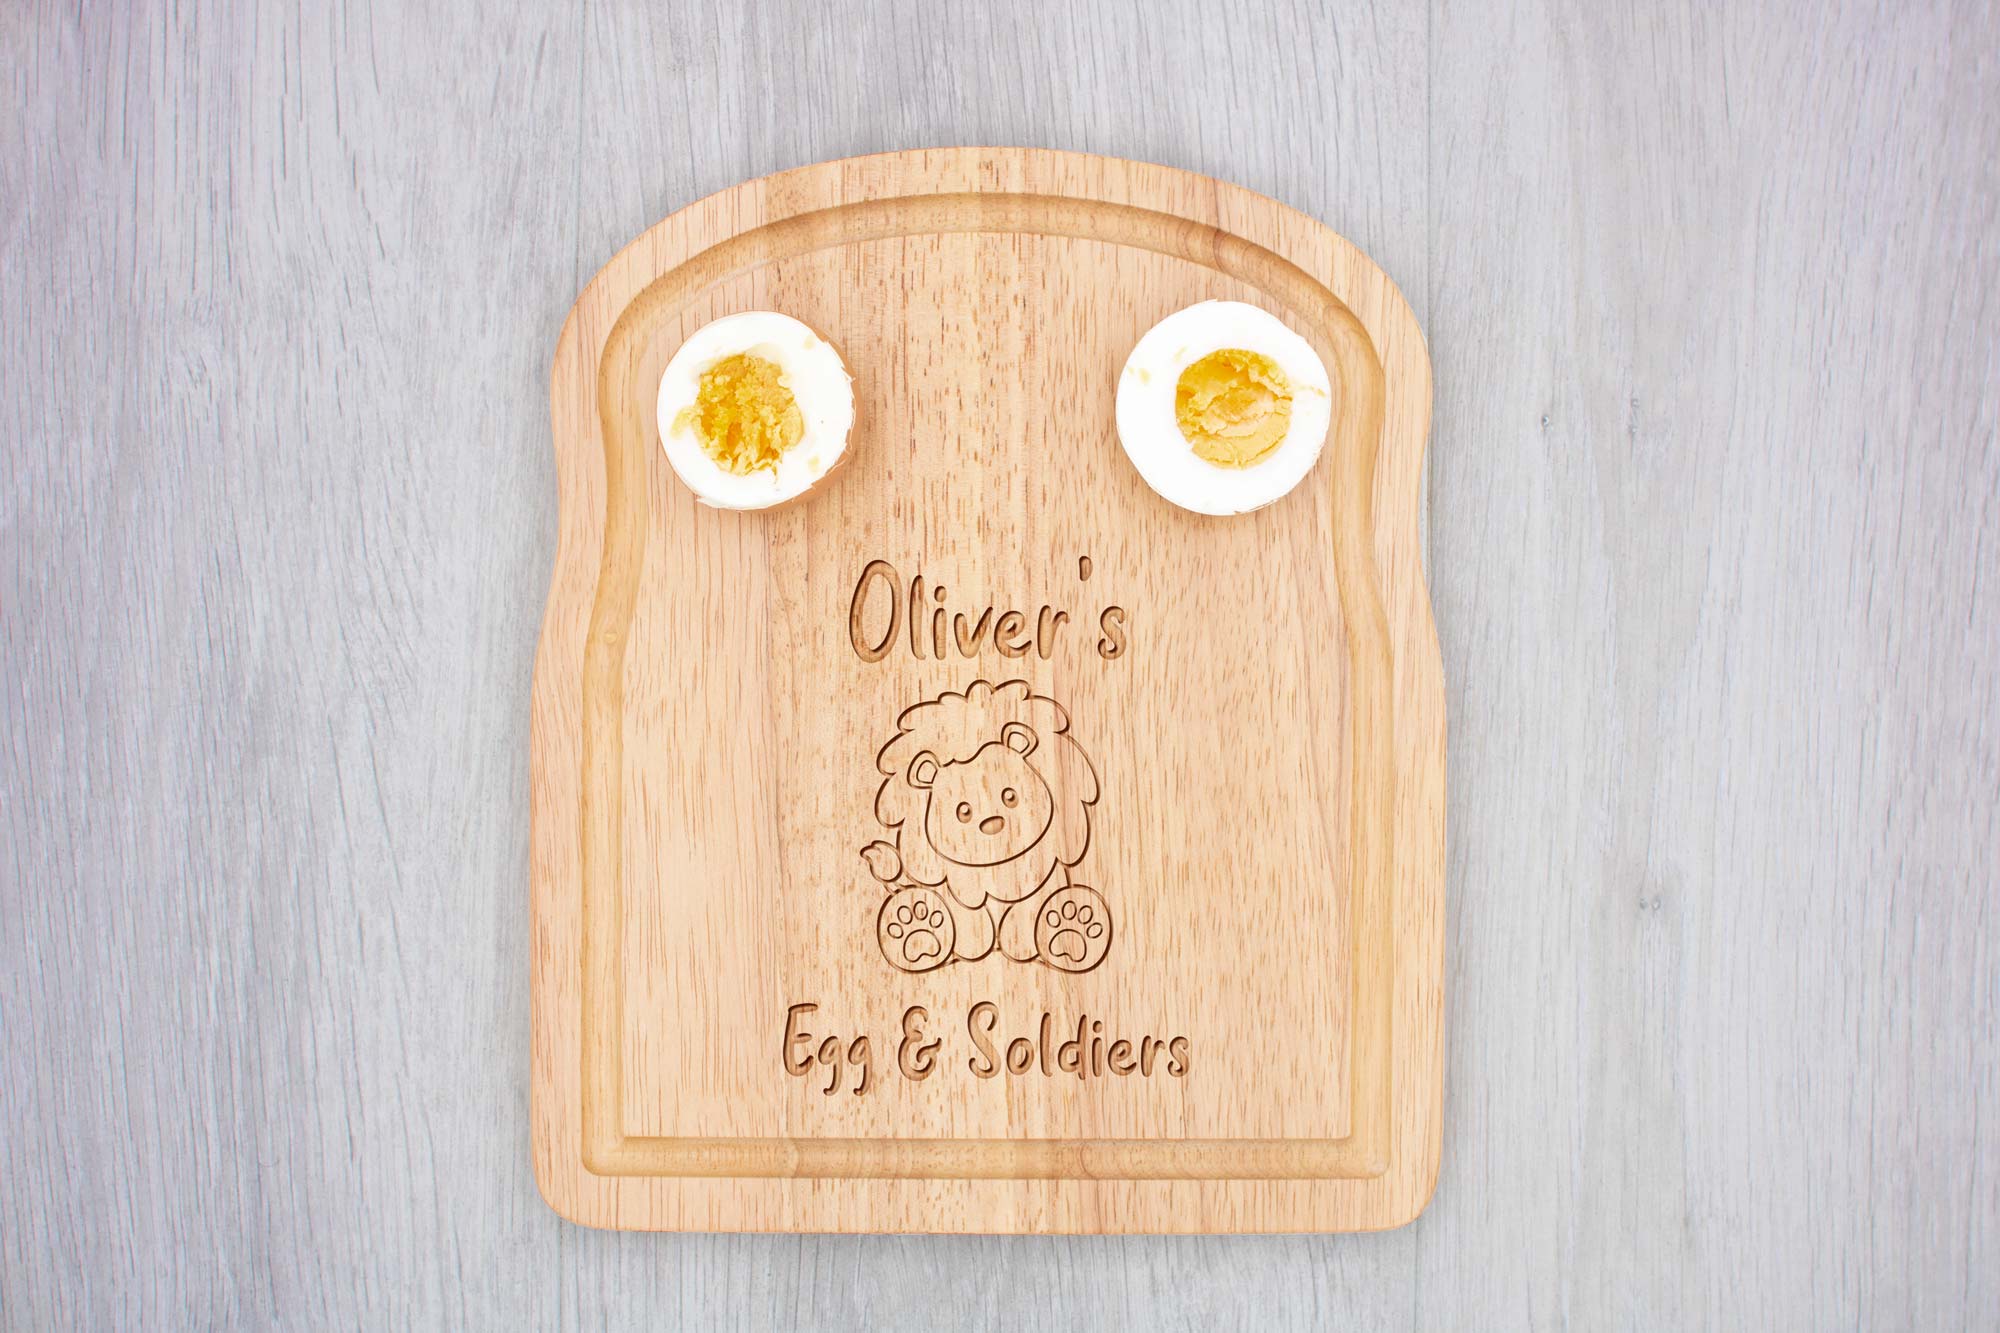 Lion Breakfast Board Egg & Soldiers